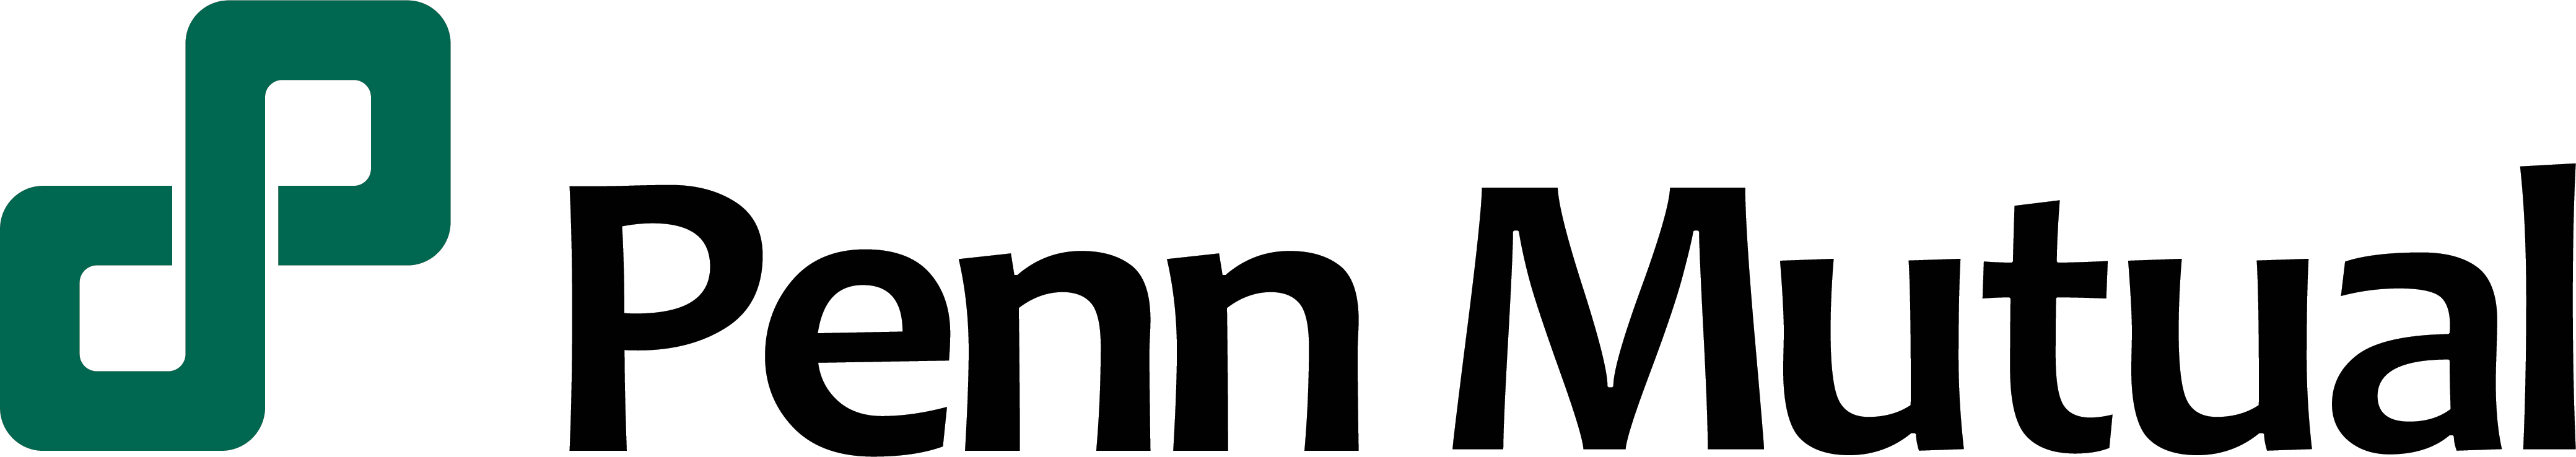 Penn Mutual logo